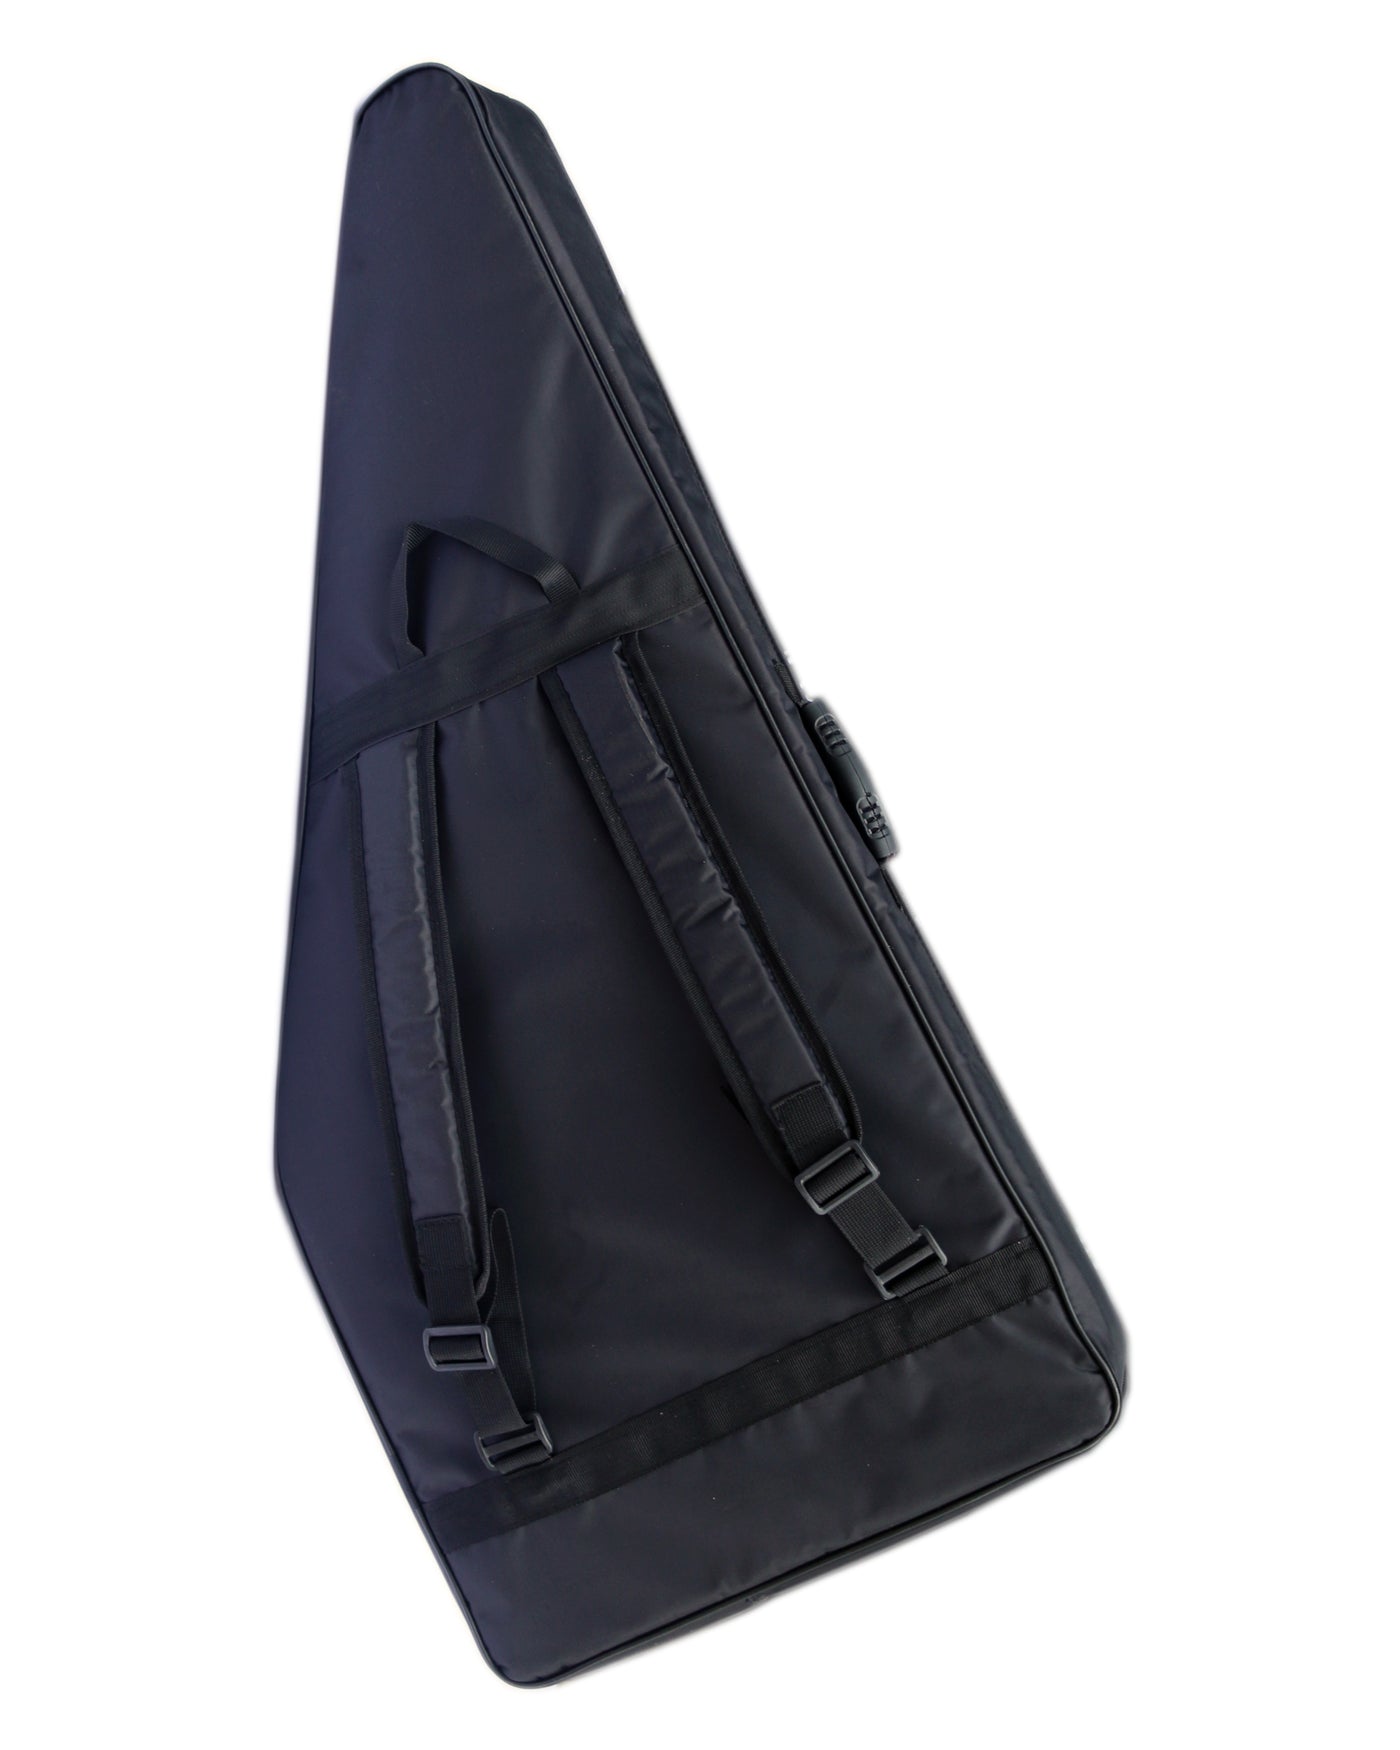 Padded Gig Bag For Kanun BCK-206